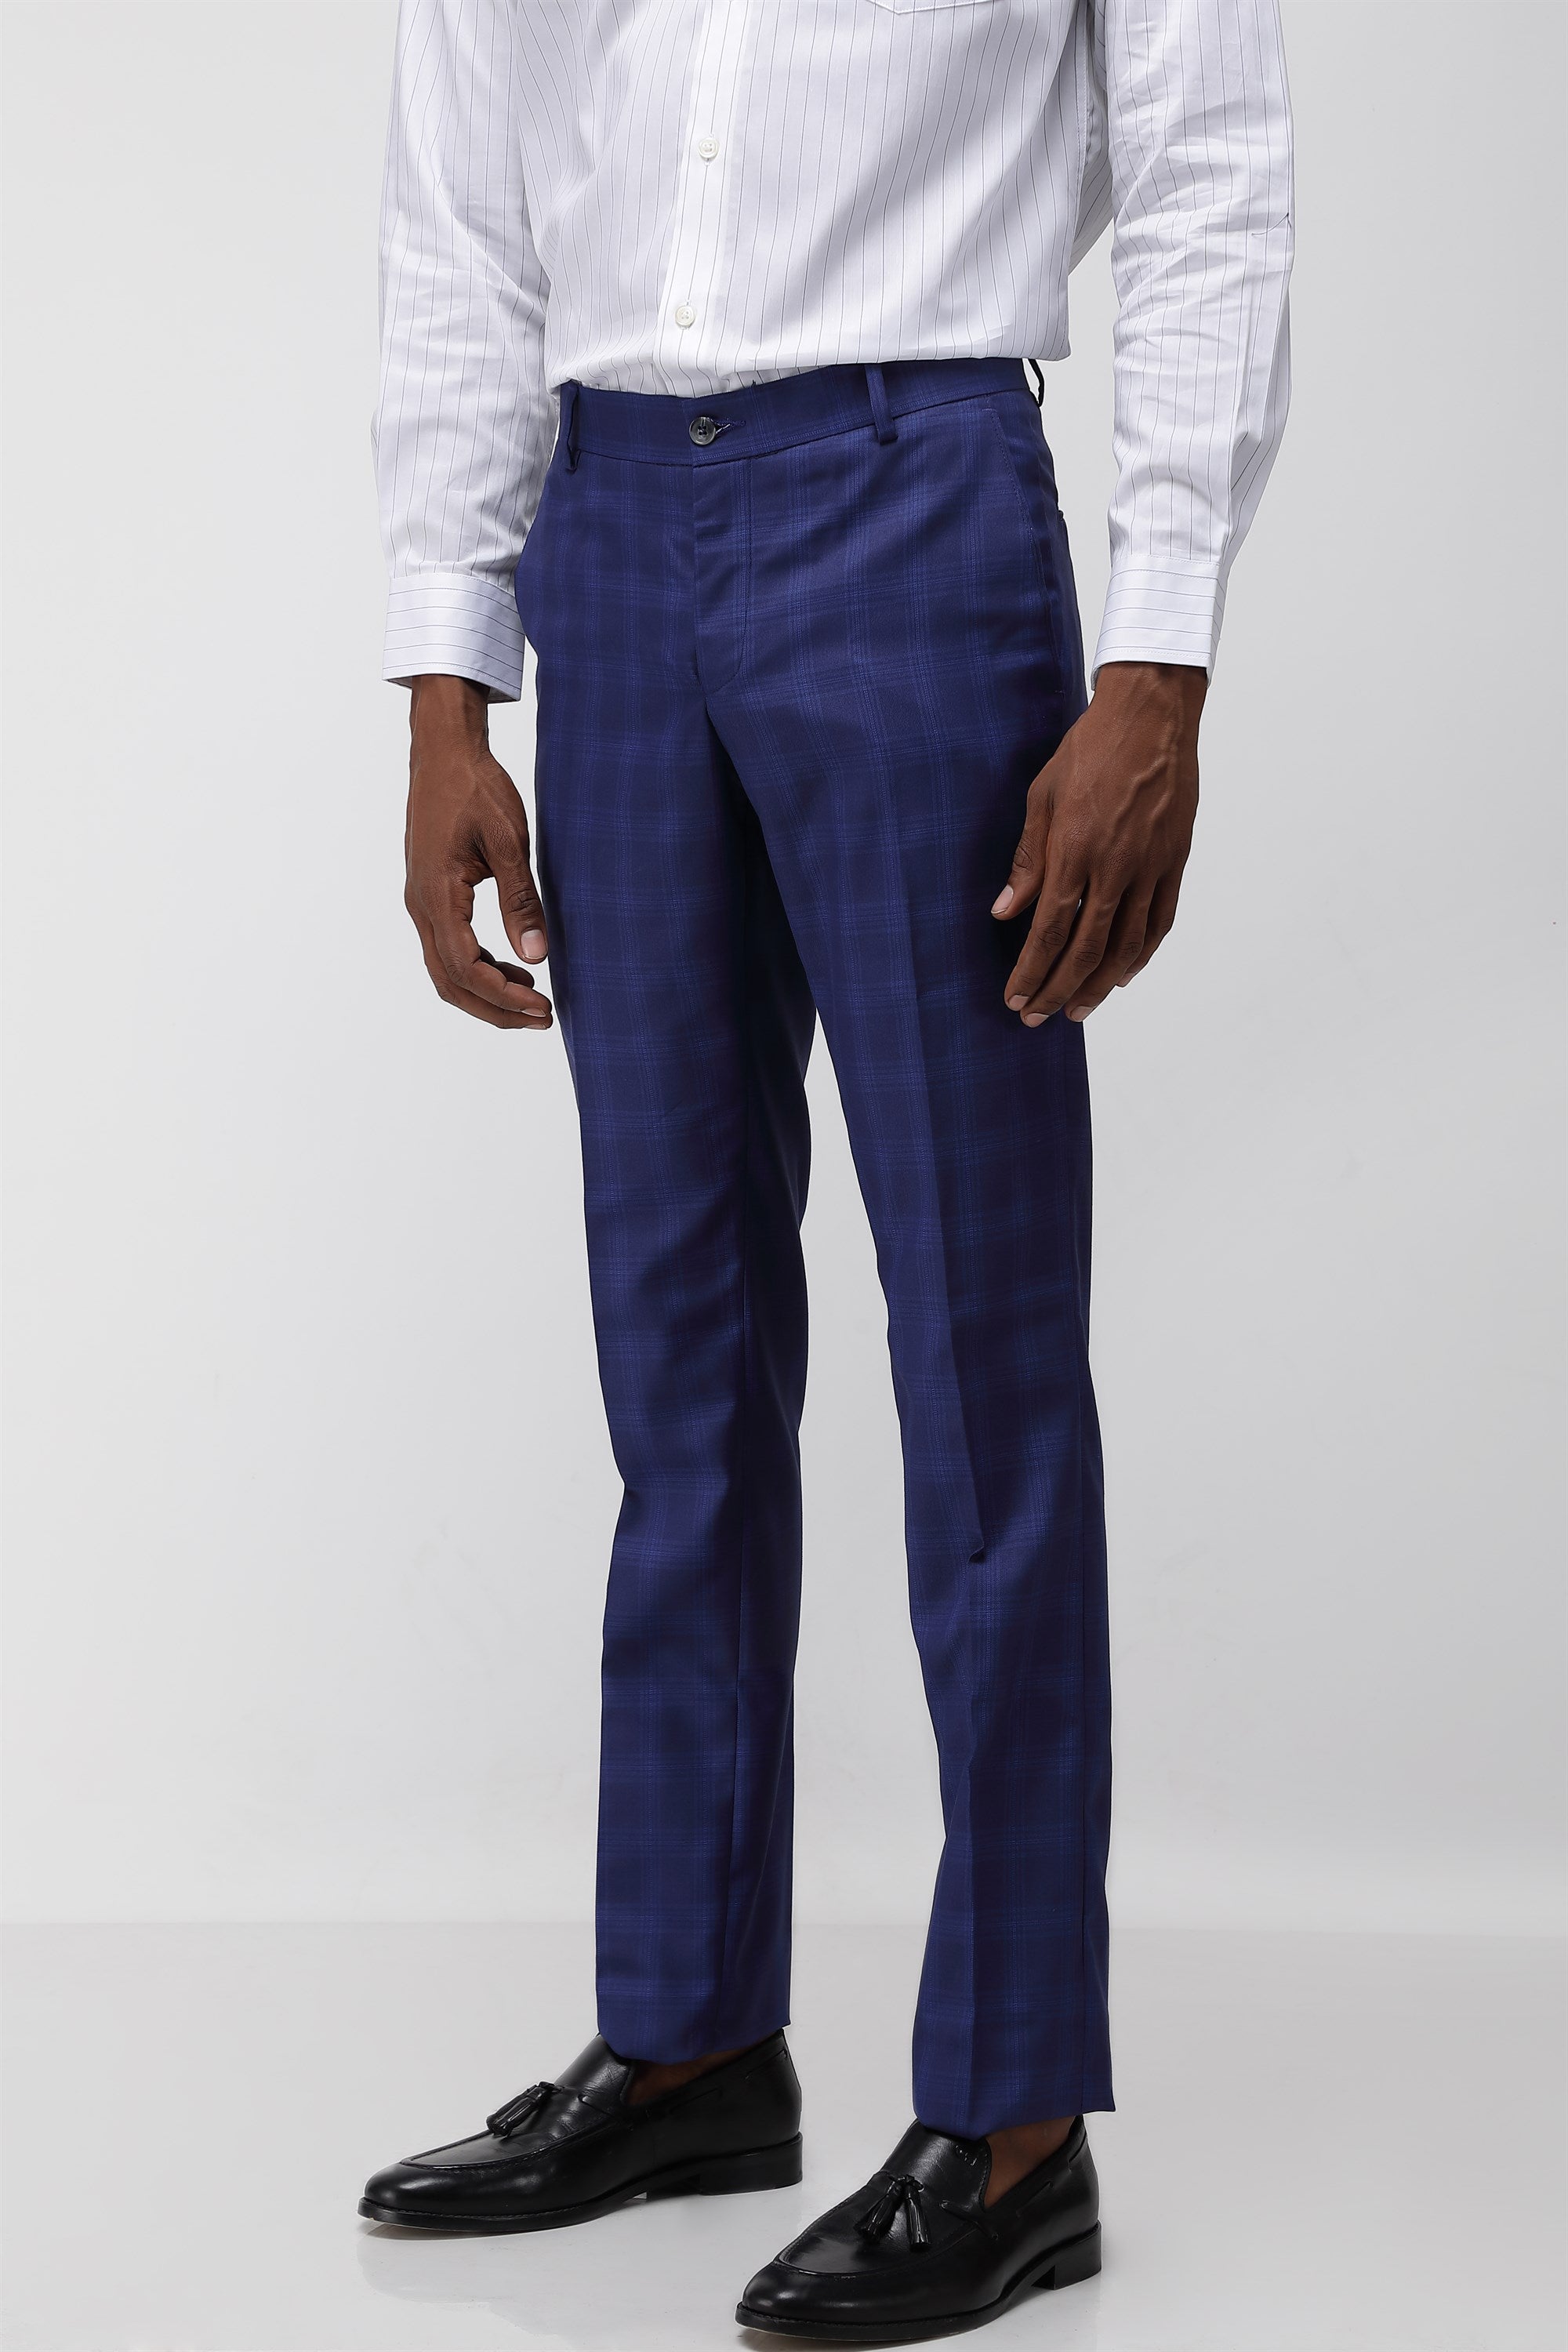 T the brand Men Formal Check Trouser - Navy Blue